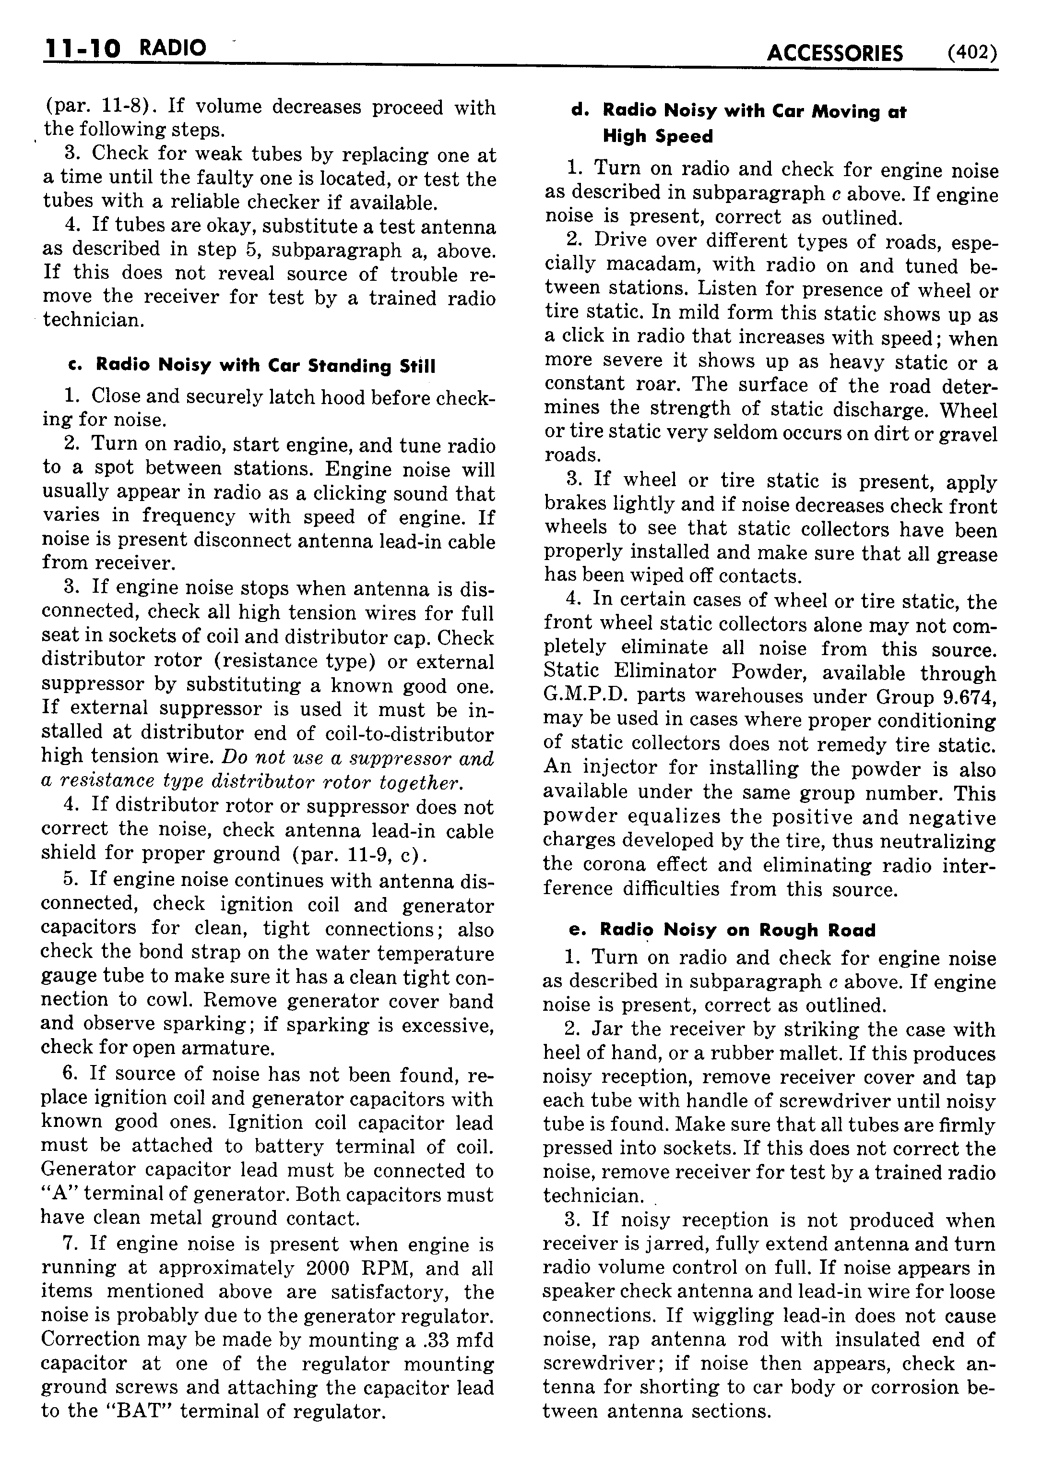 n_12 1951 Buick Shop Manual - Accessories-010-010.jpg